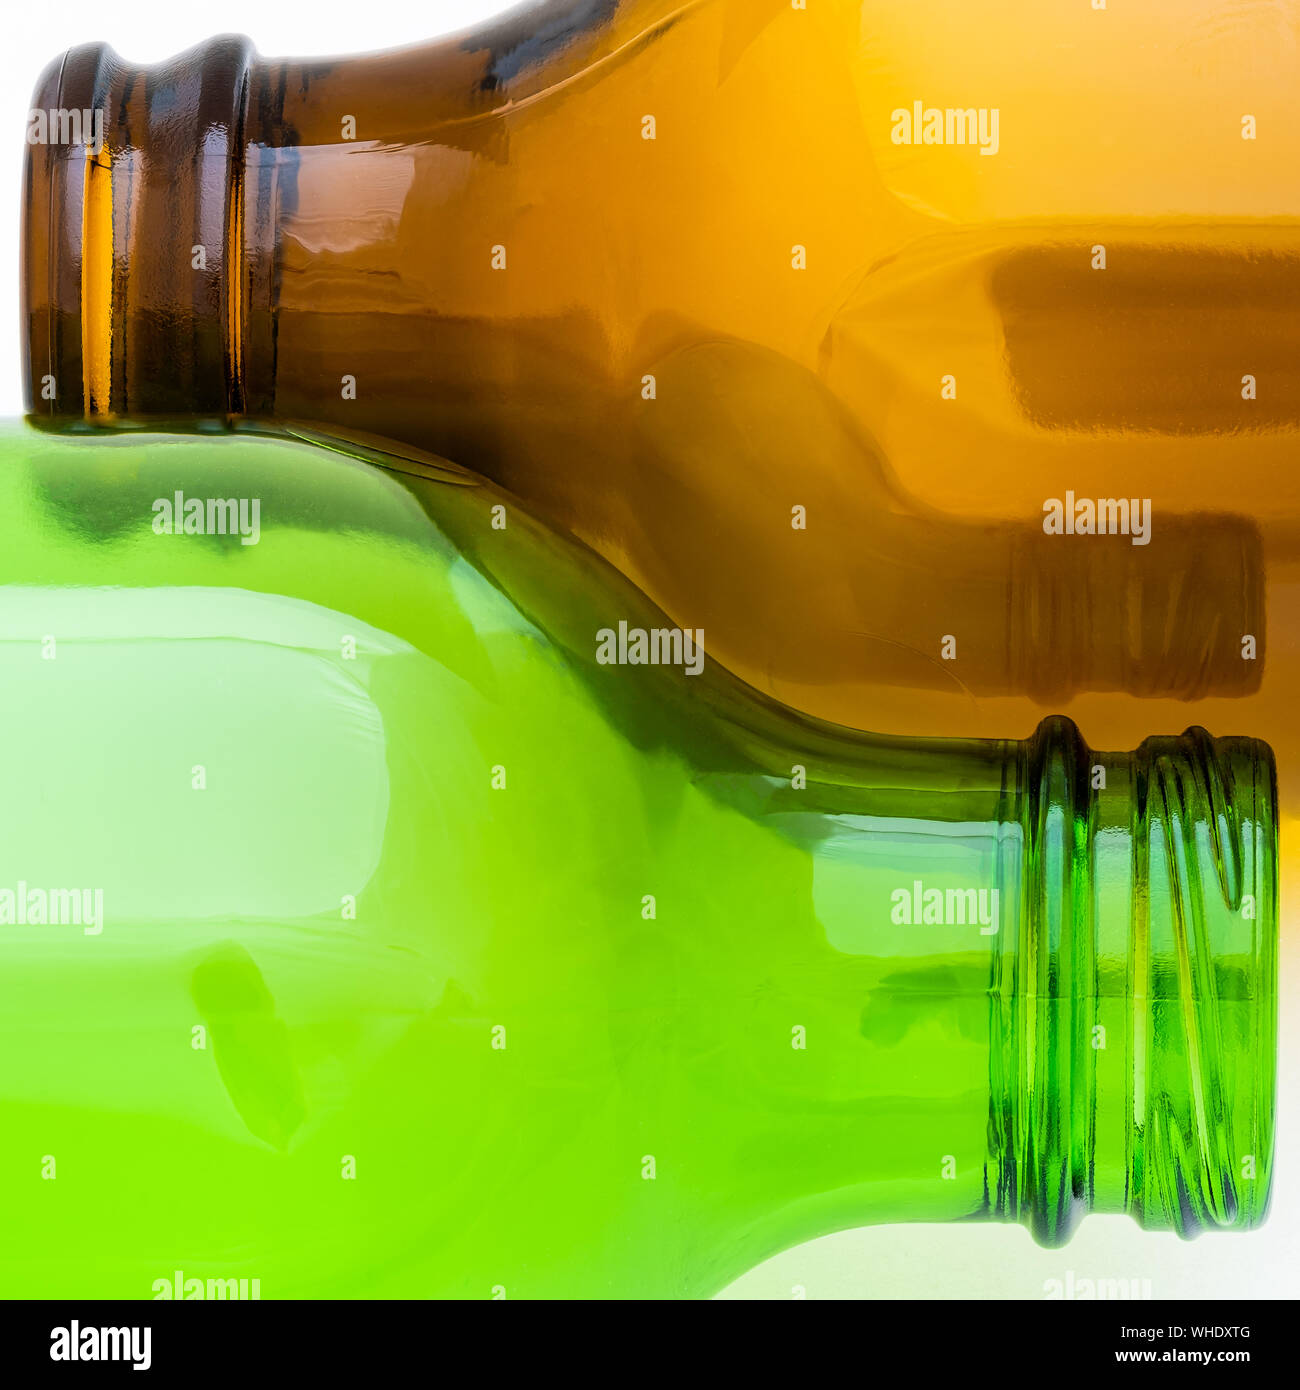 Resumen hermosas curvas de un vacío de cerveza marrón y verde botella acostada de lado a lado sobre un fondo blanco. Foto de stock